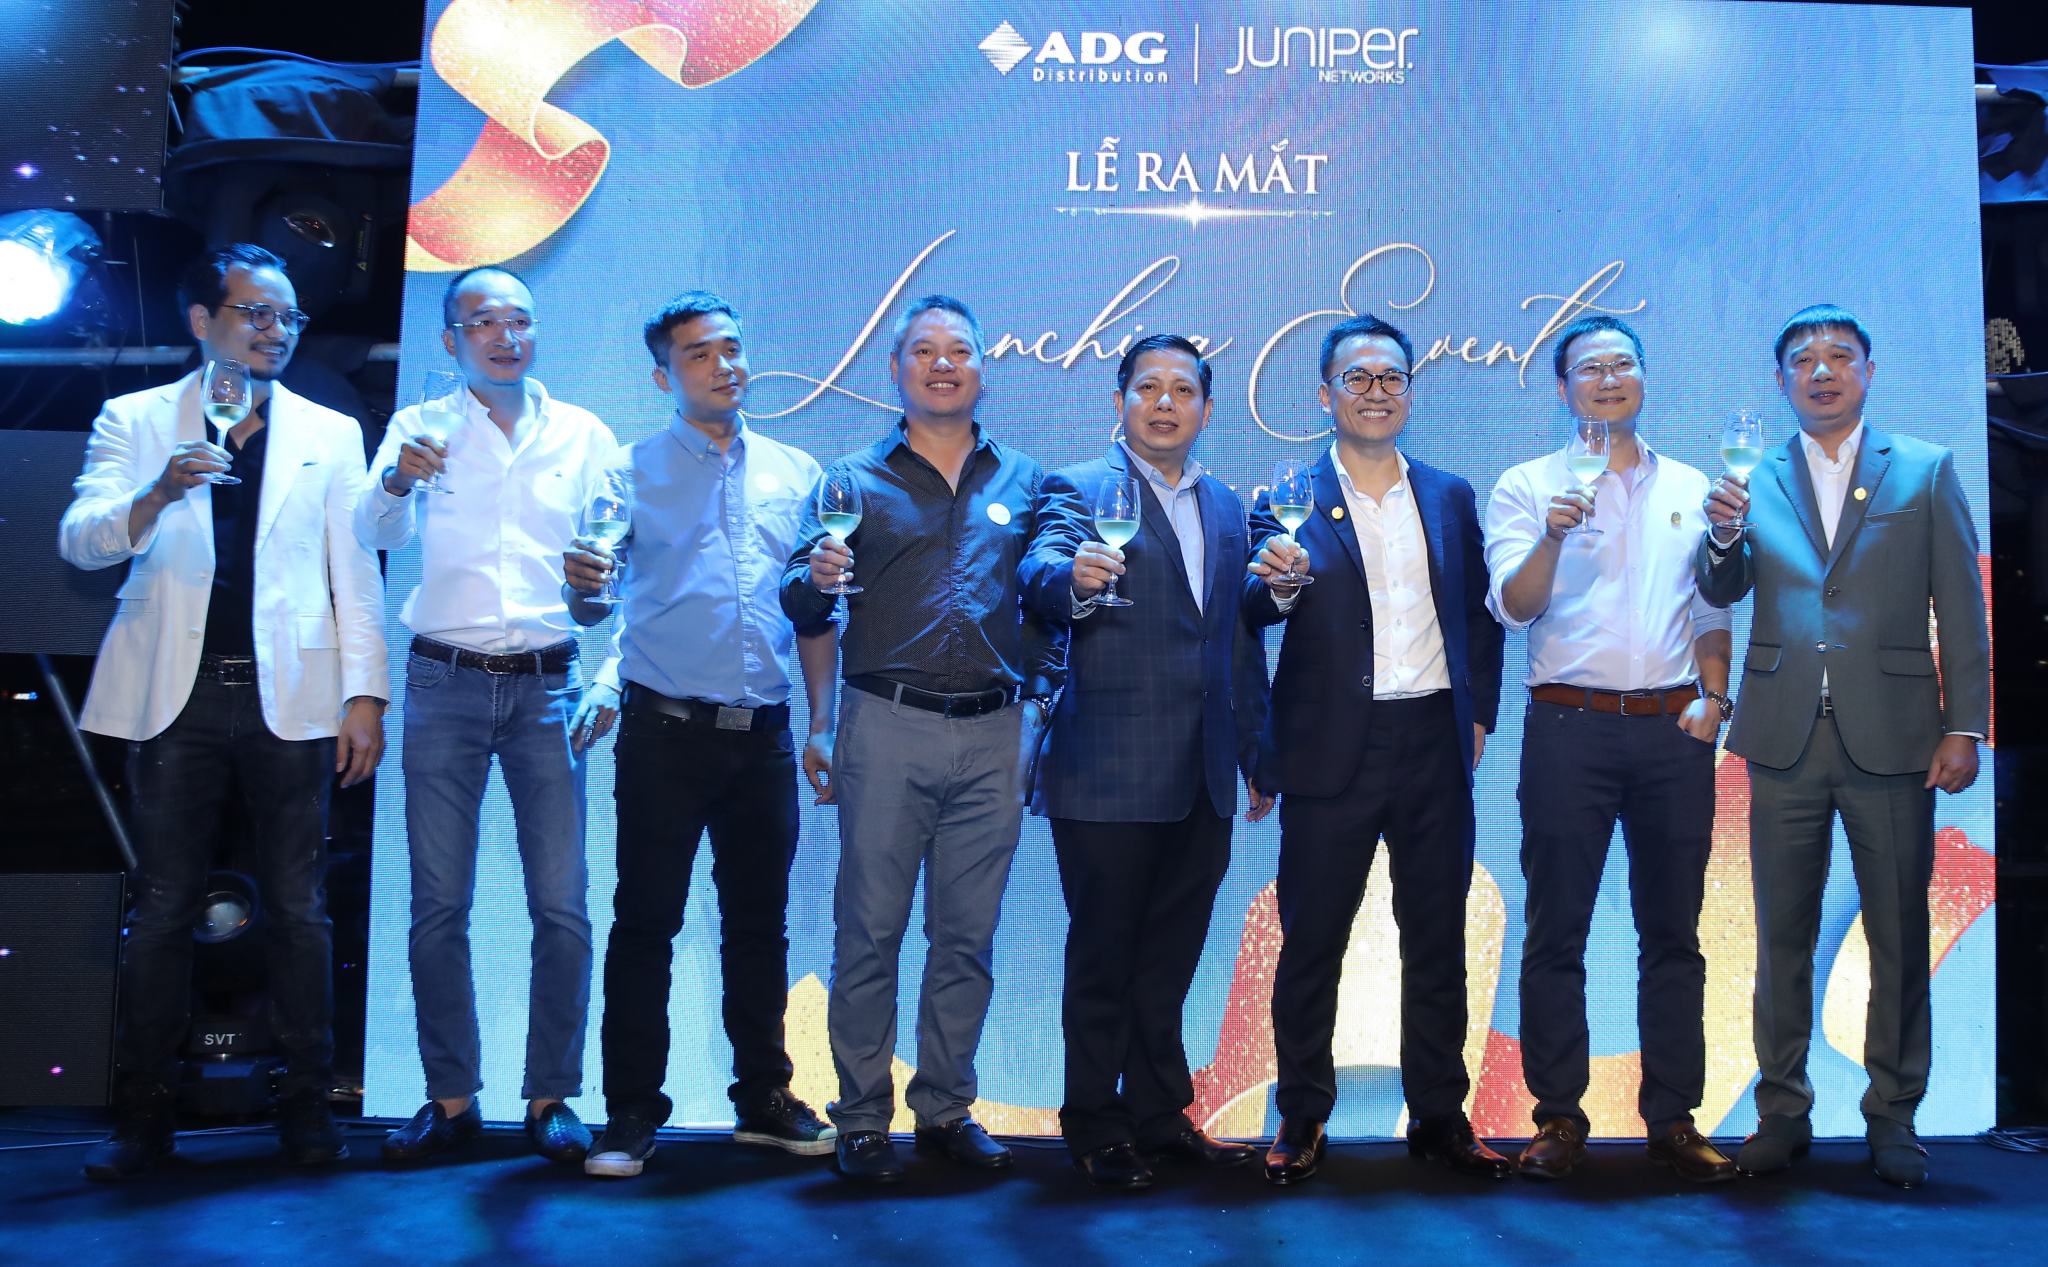 ADG chính thức trở thành nhà phân phối Juniper Networks nội địa đầu tiên